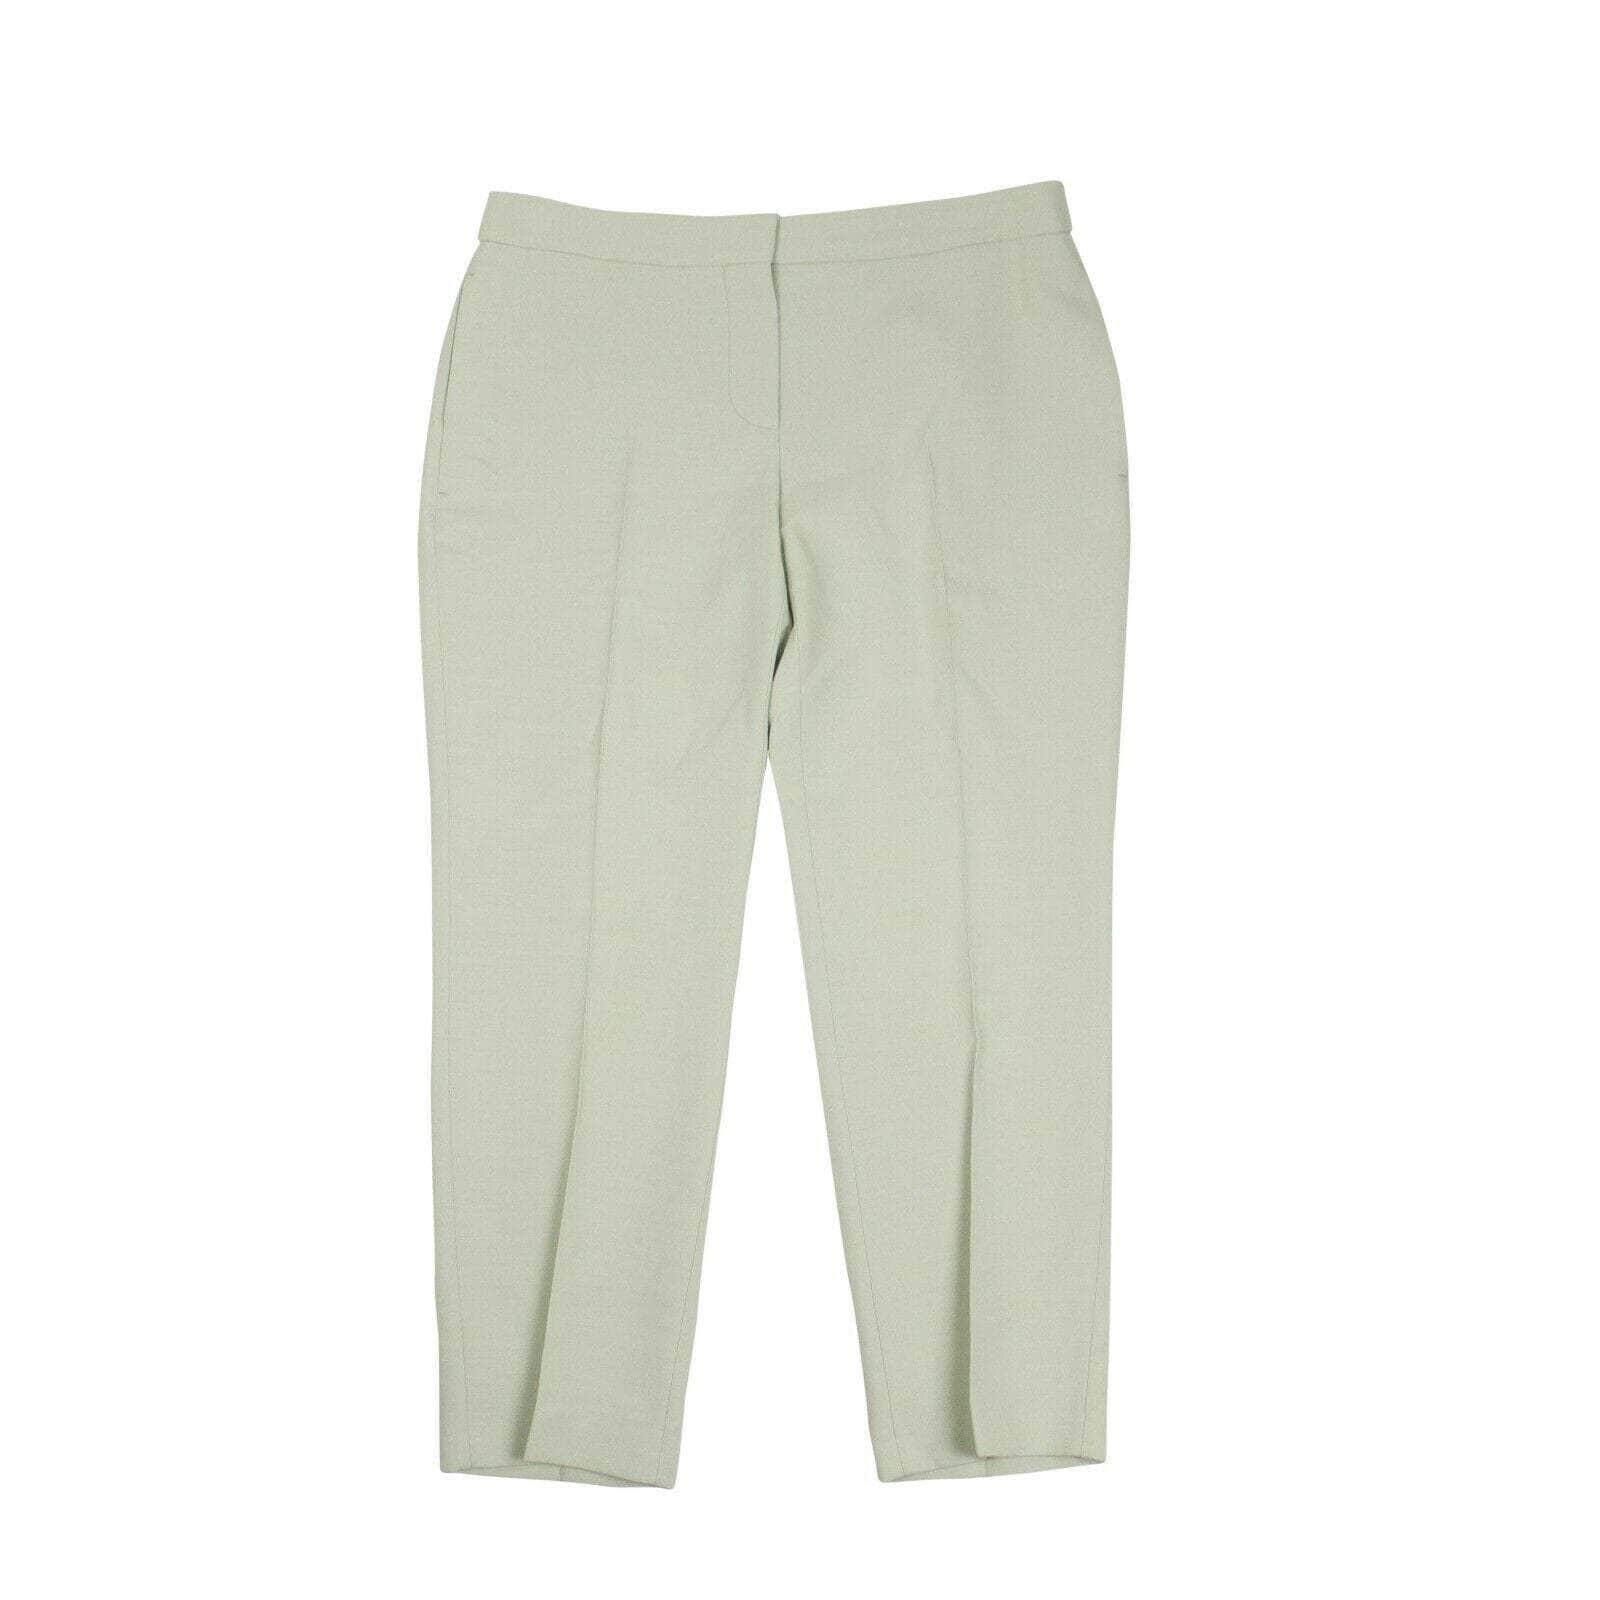 Alexander McQueen Women's Pants Straight Leg Pants - Mint Green